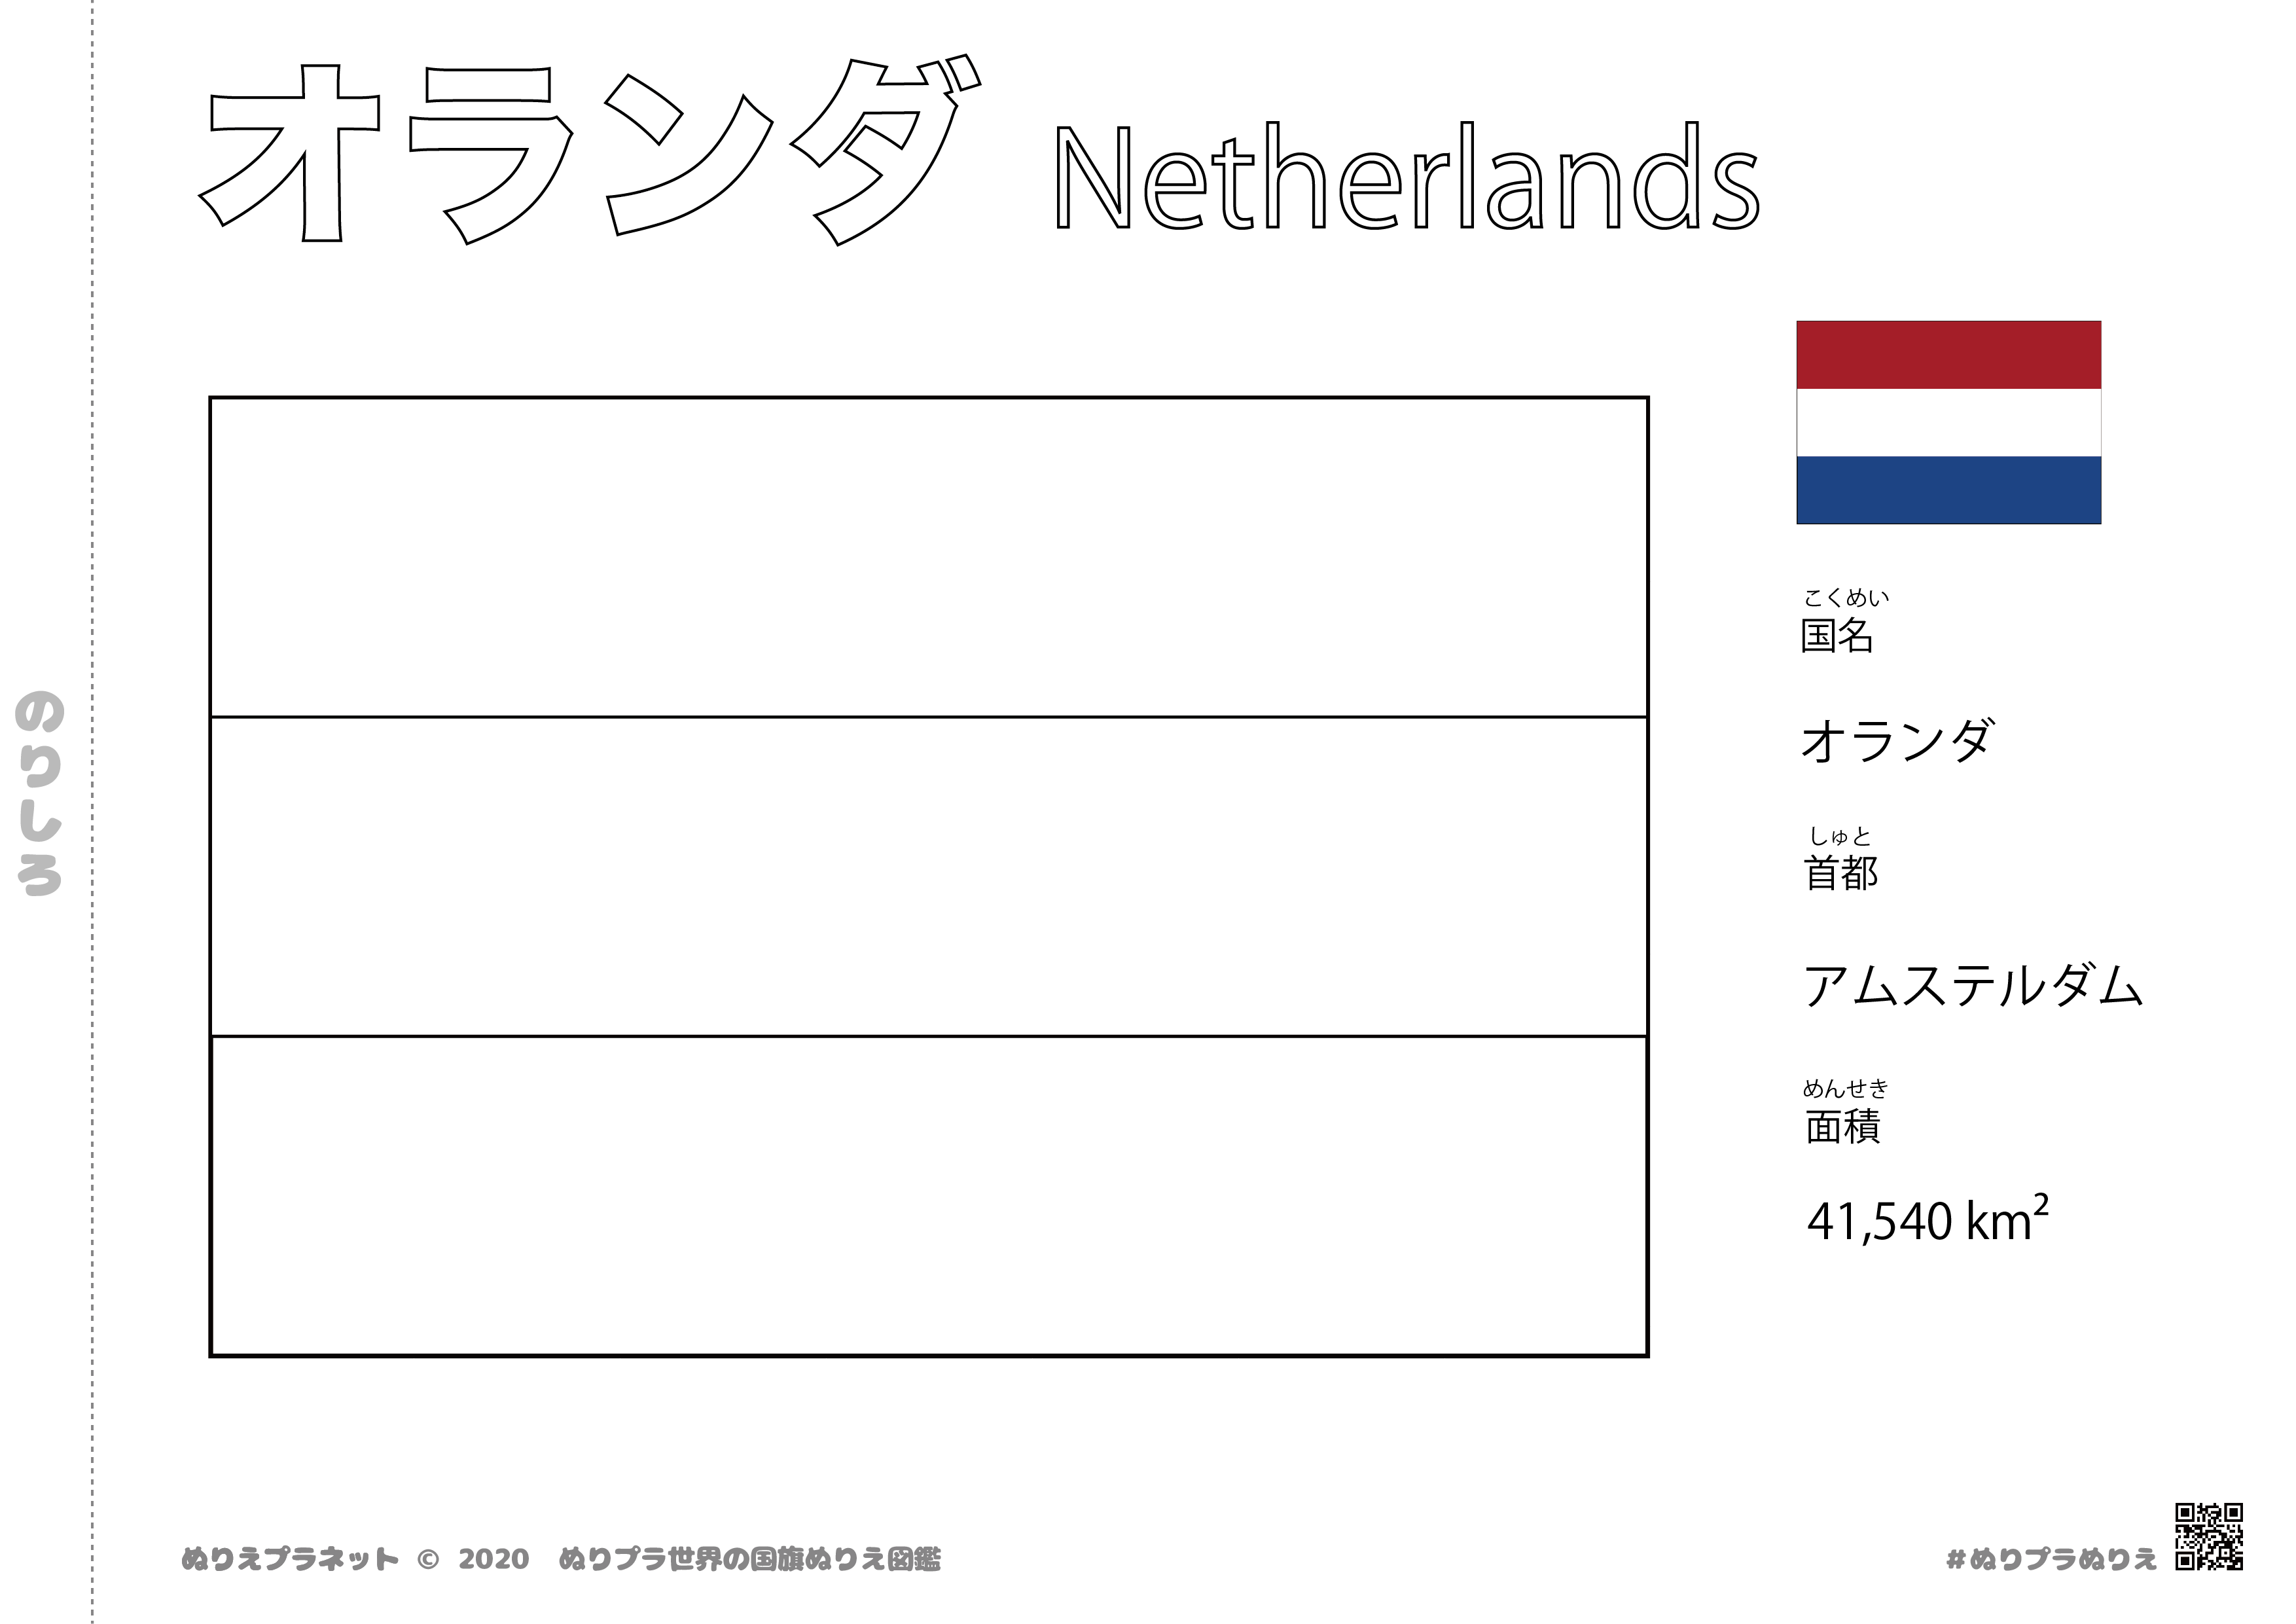 世界の国旗ぬりえ図鑑シリーズのオランダの国旗です。